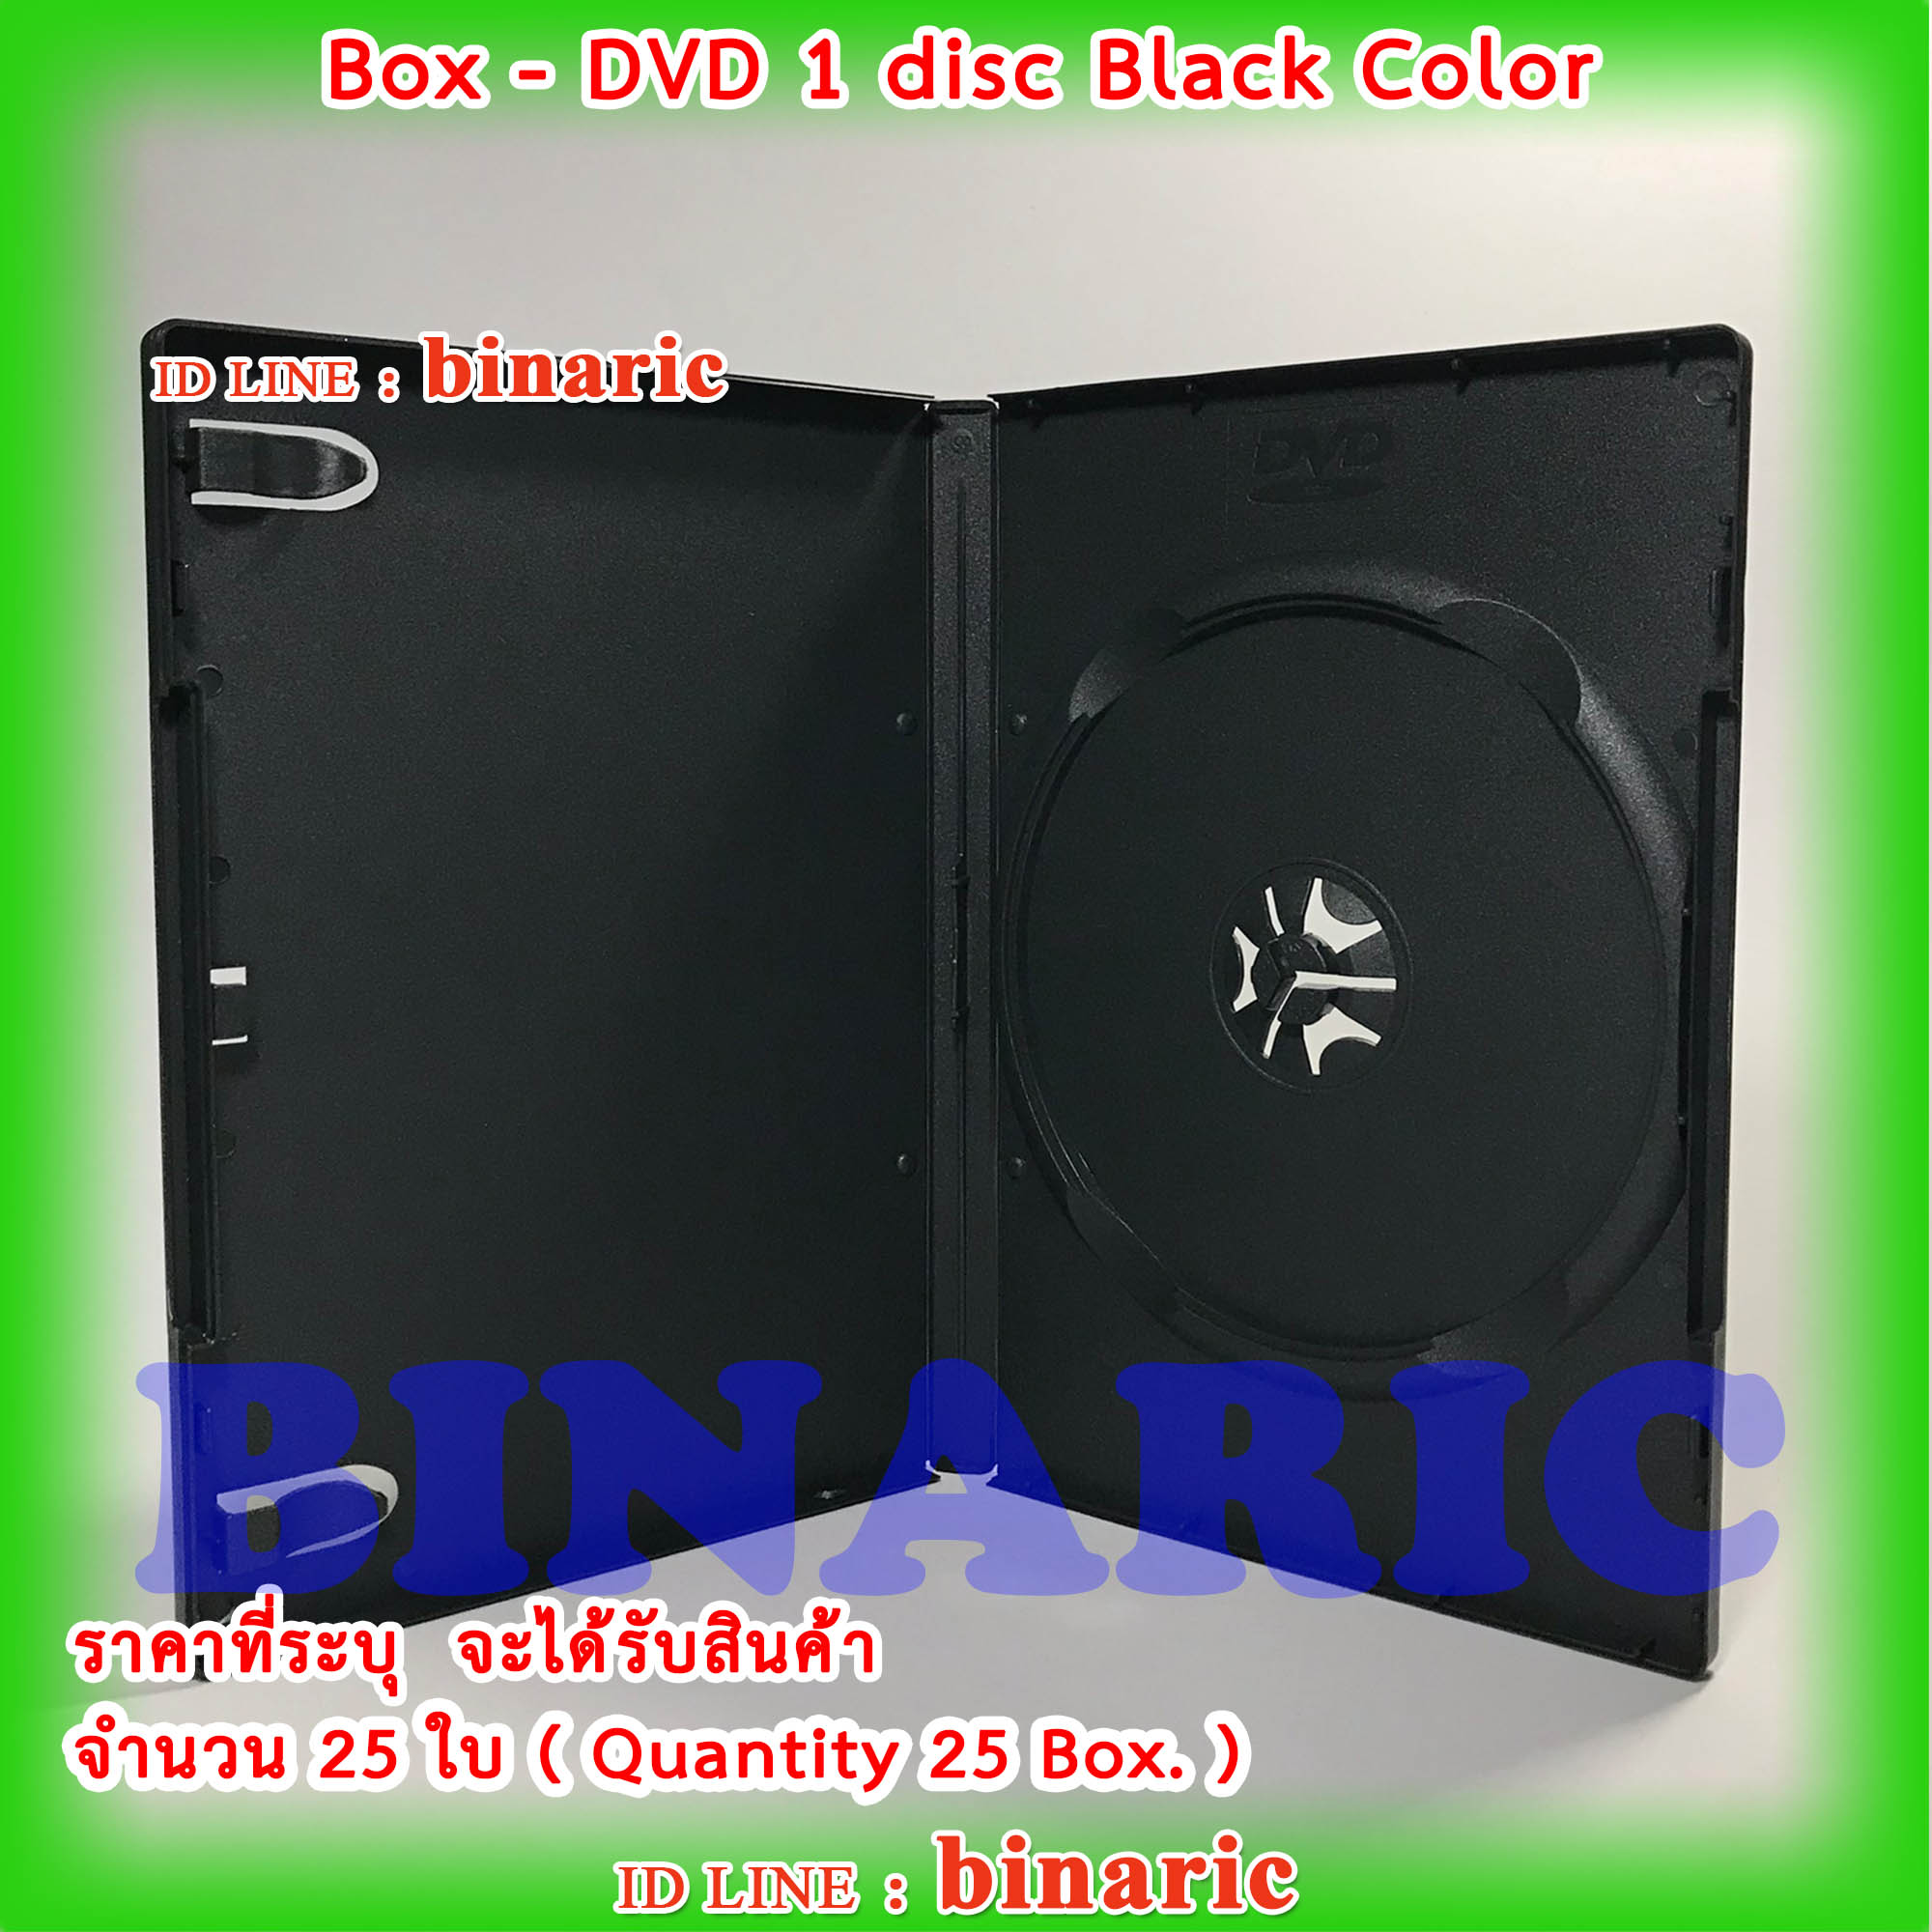 Box DVD 1 disc Black Color ( Qty. 25 box. ) / กล่องดีวีดี1หน้าดำ / กล่องดีวีดี 1 DVD สีดำ จำนวน  25 ใบ